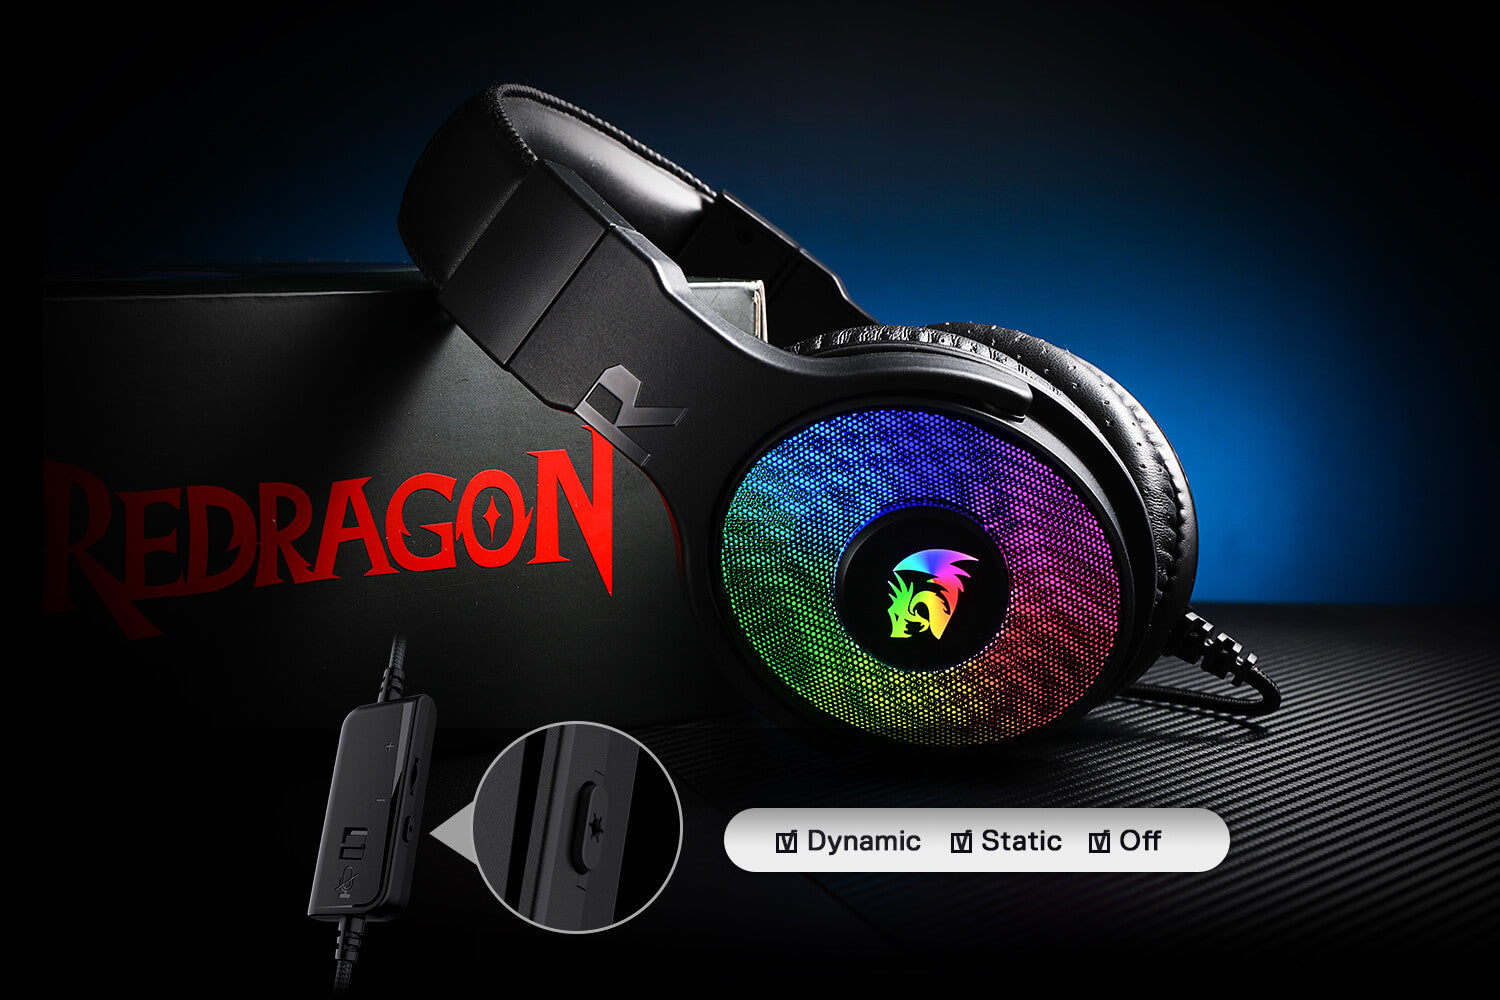 Redragon H350 Pandora RGB Wired Gaming Headset